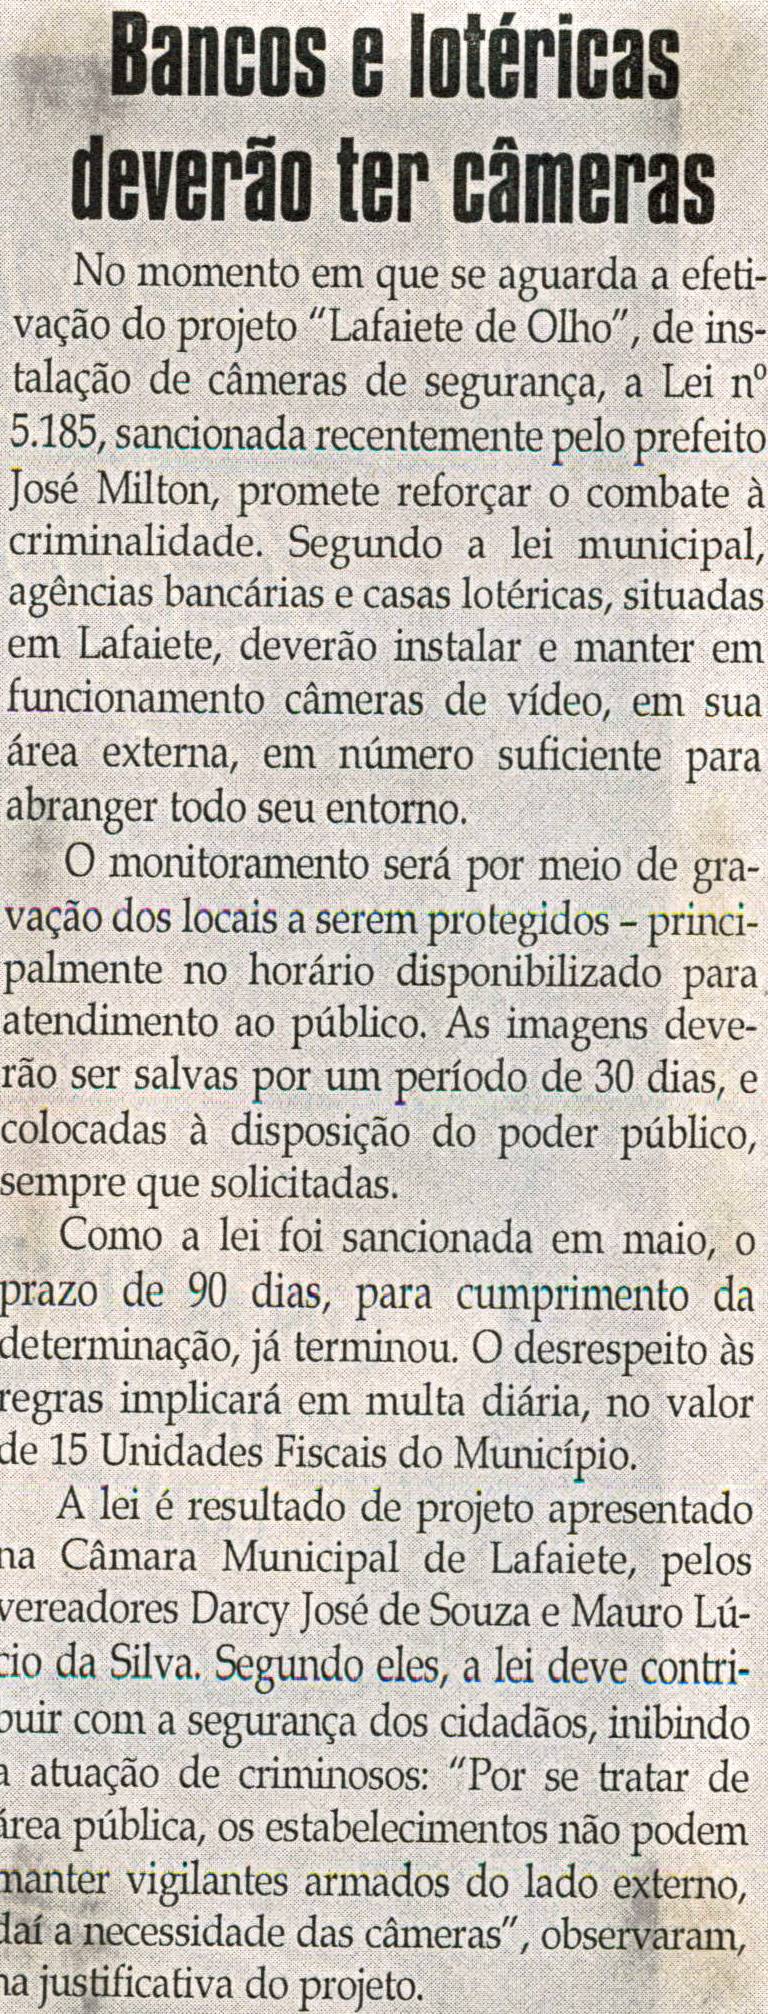 Bancos e lotéricas deverão ter câmaras. Jornal Correio da Cidade, Conselheiro Lafaiete, 18 set. 2010, p. 04.